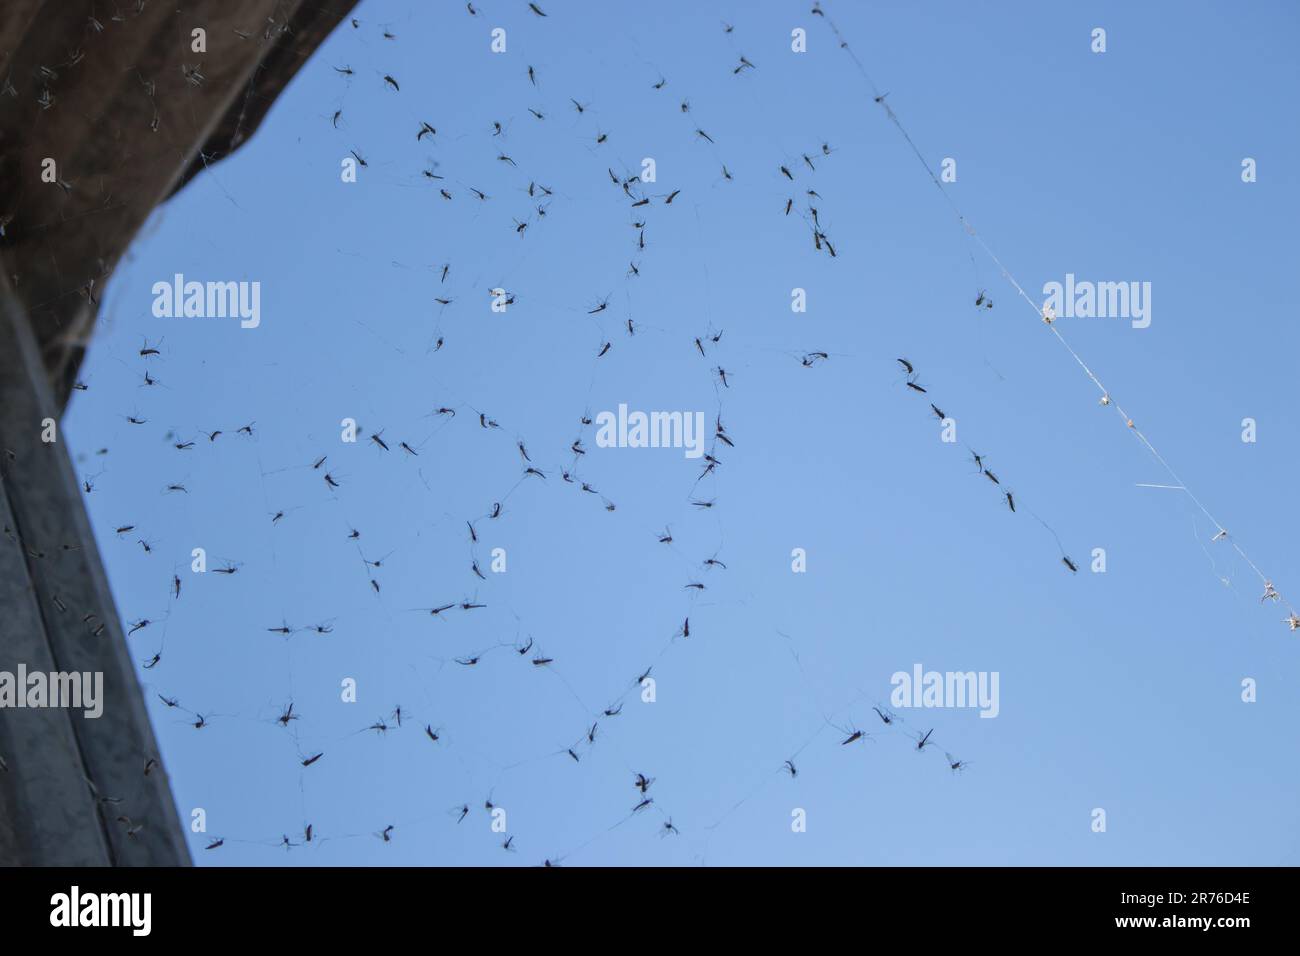 Spinnennetz mit toten Moskitos auf blauem Himmelshintergrund. Insektenleben. Insekten im Spinnennetz. Opferkonzept. Das Konzept der Falle und des Fanggeräts. Kämpfen Sie um Ihr Leben. Stockfoto